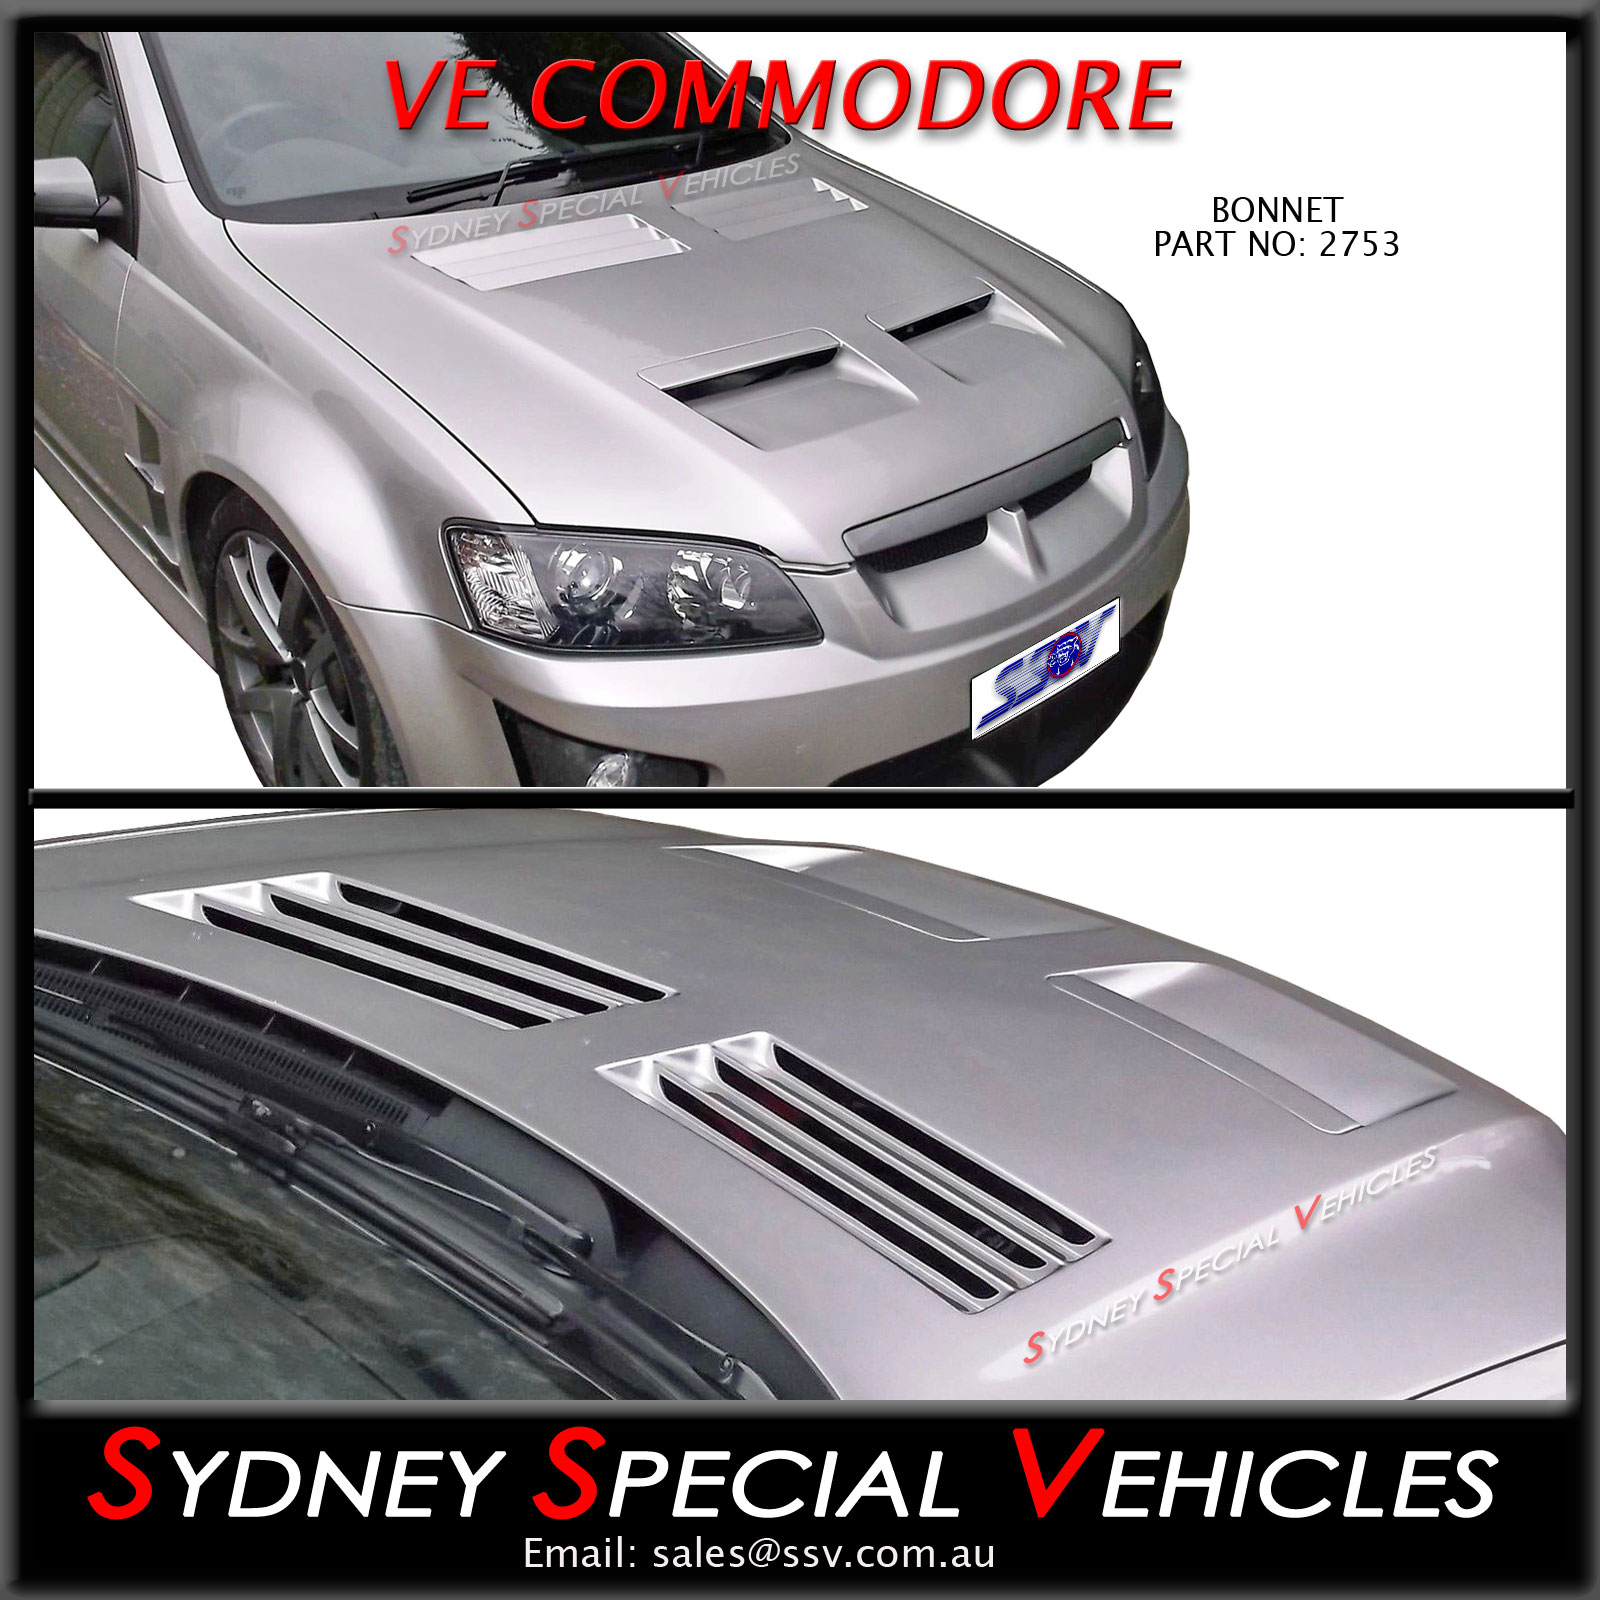 VE E2 Vector Vents suit Holden Commodore Monaro Fibreglass